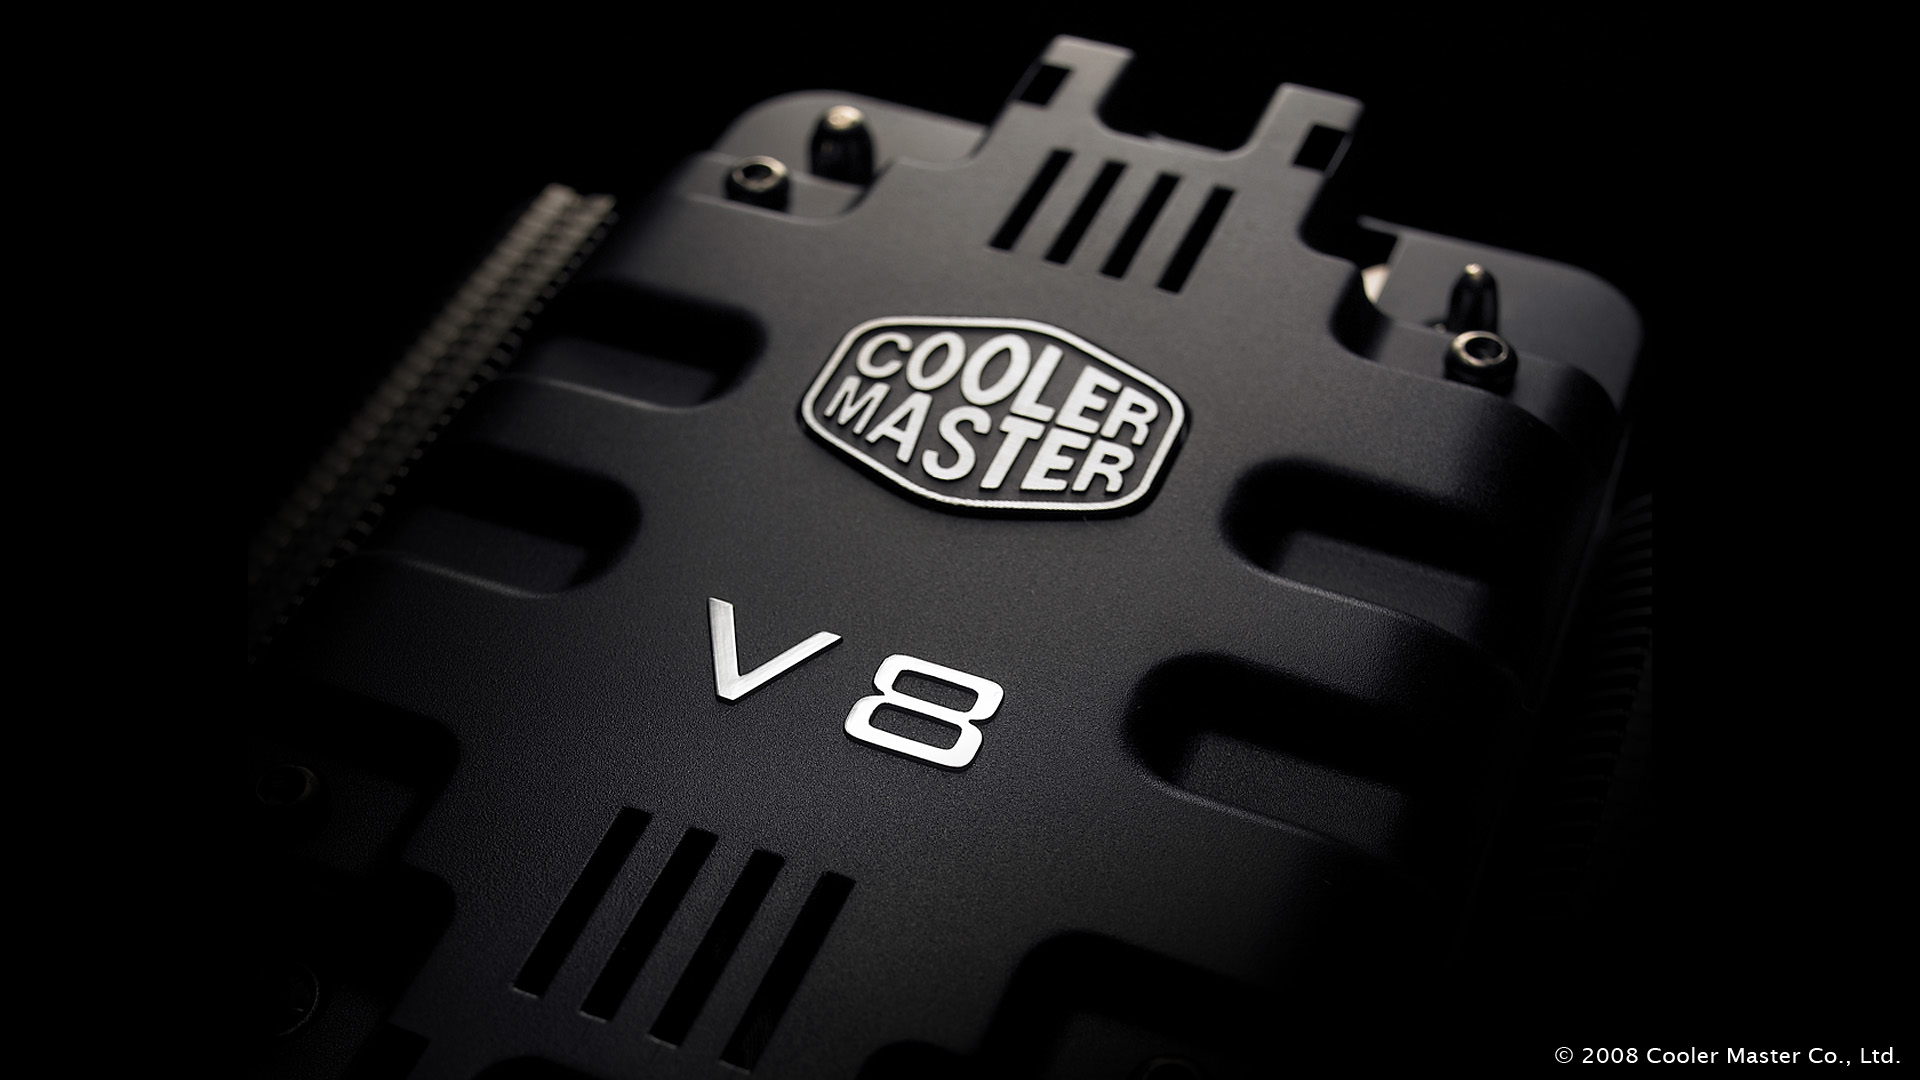 Cooler Master Psu Calculator Epic Cooler Master - Cooler Master , HD Wallpaper & Backgrounds